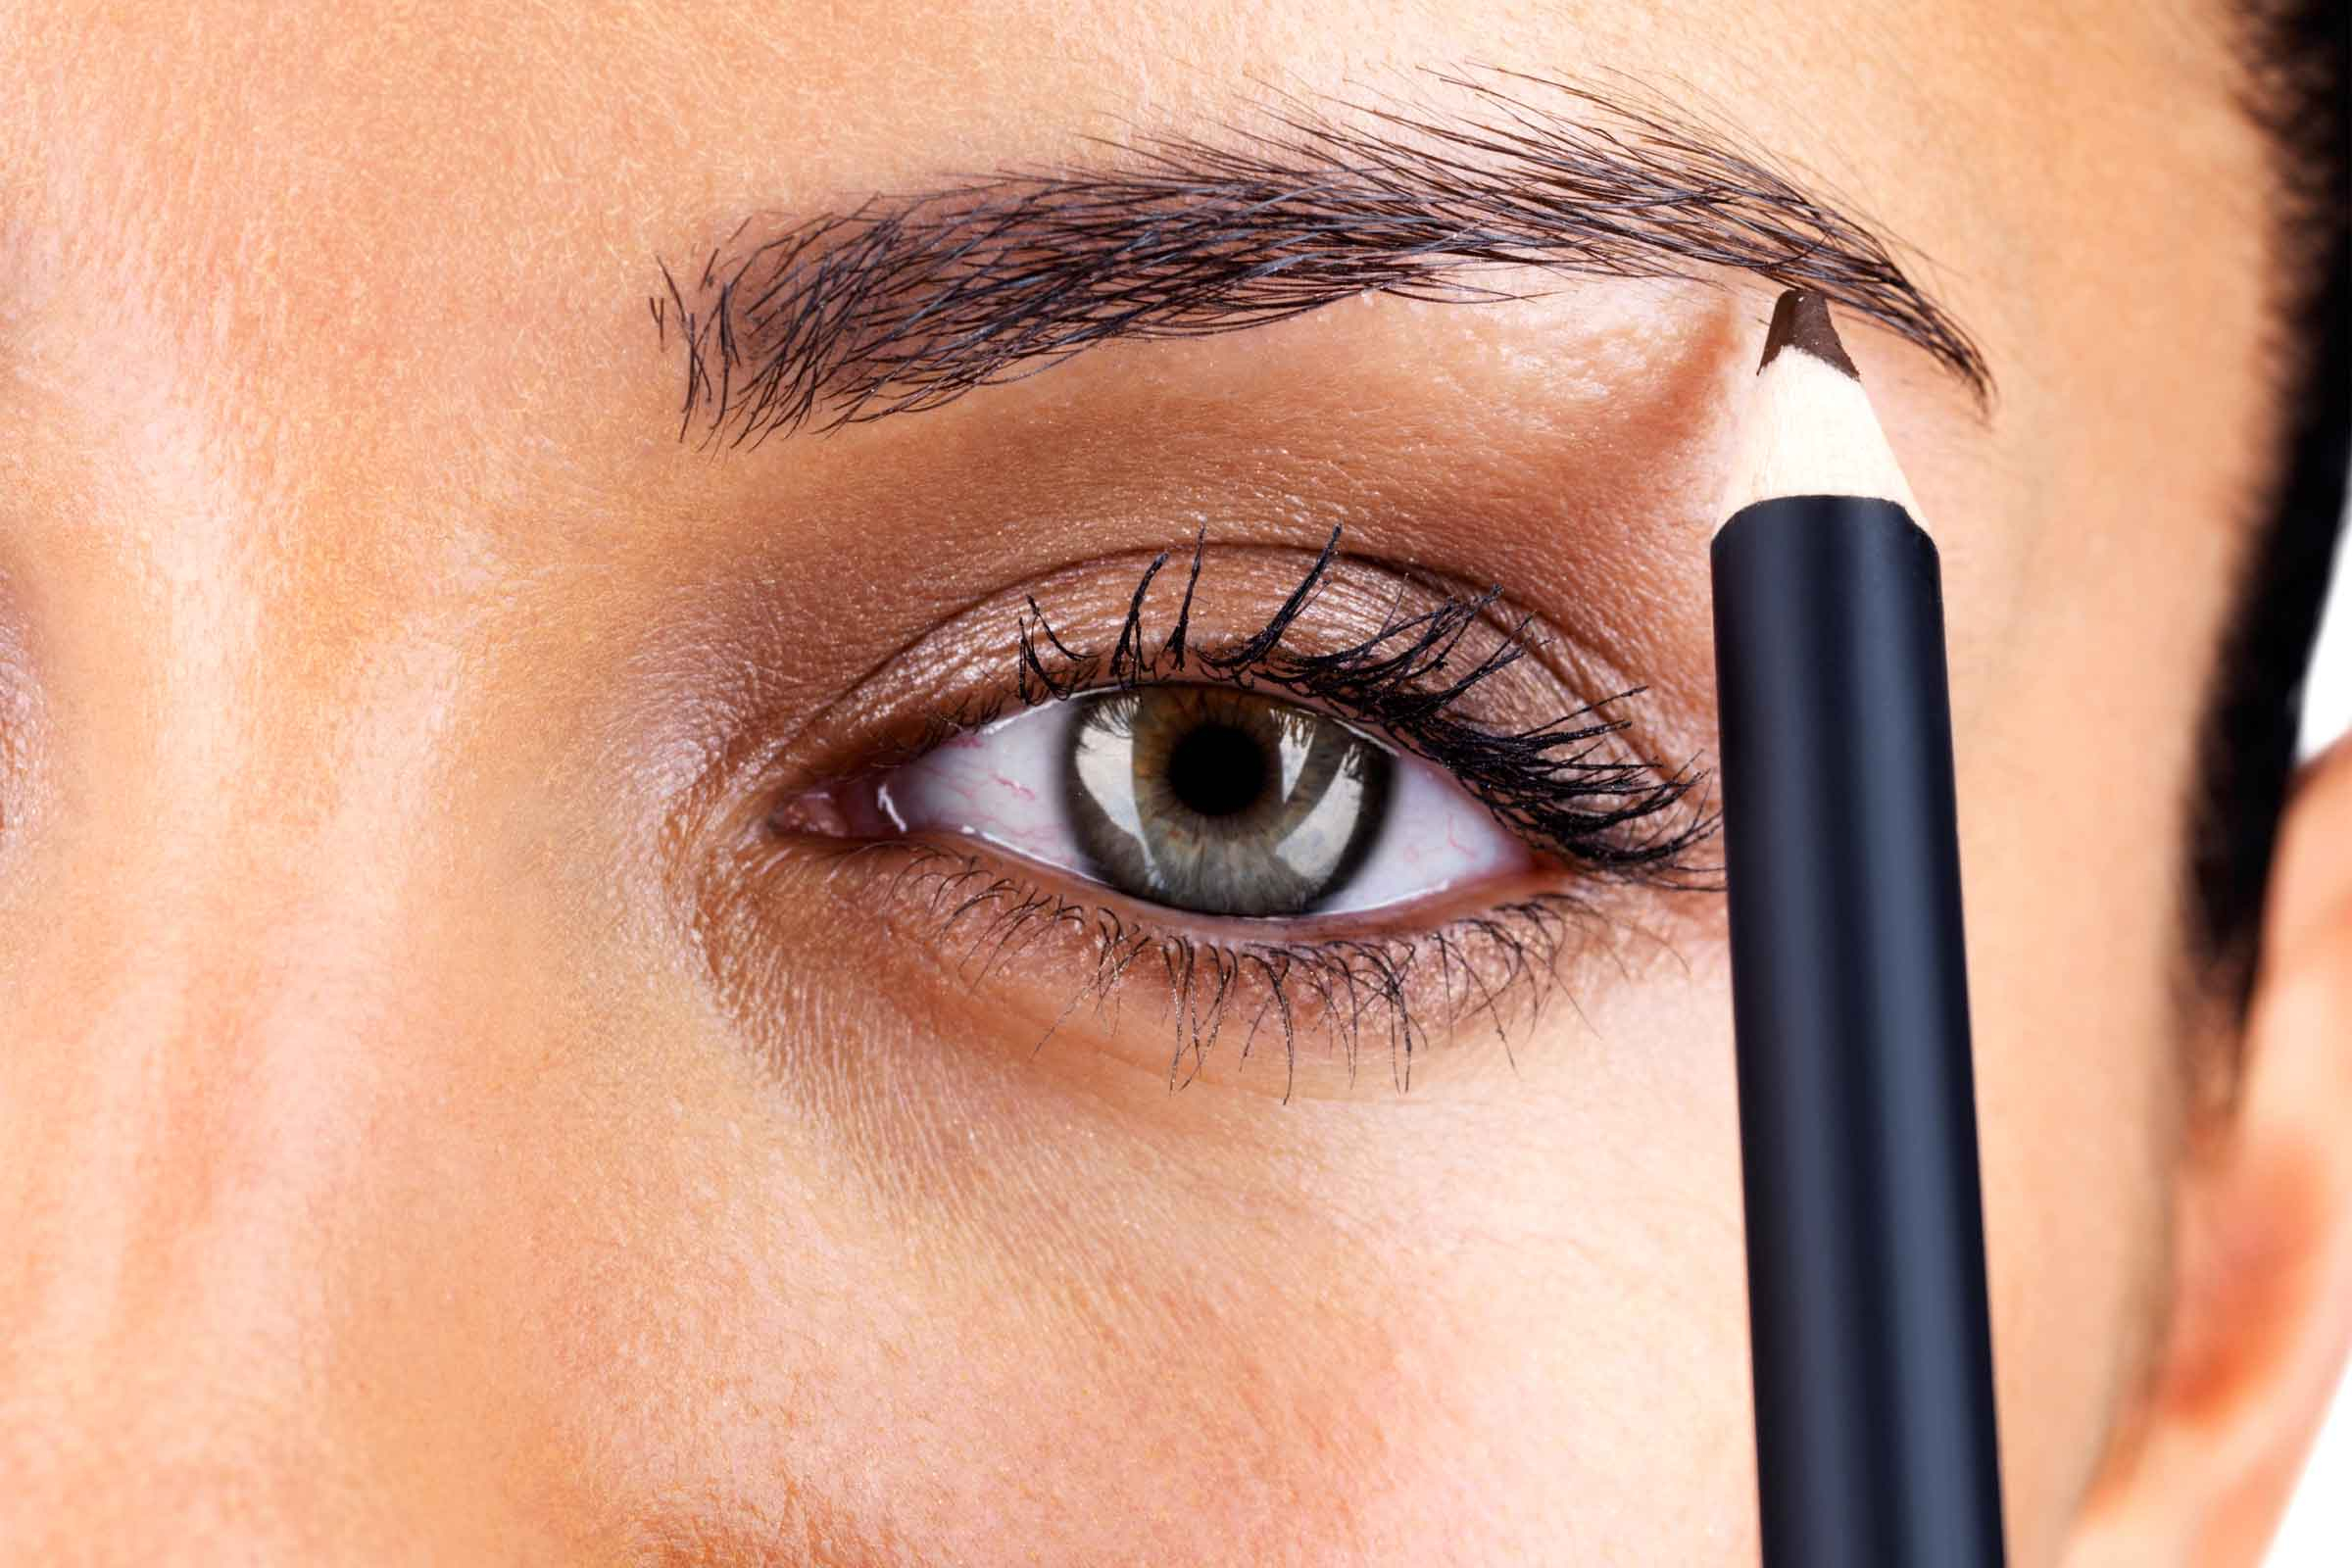 Simple Eye Makeup Eye Makeup Tips 7 Ways To Make Your Eyes Pop Readers Digest